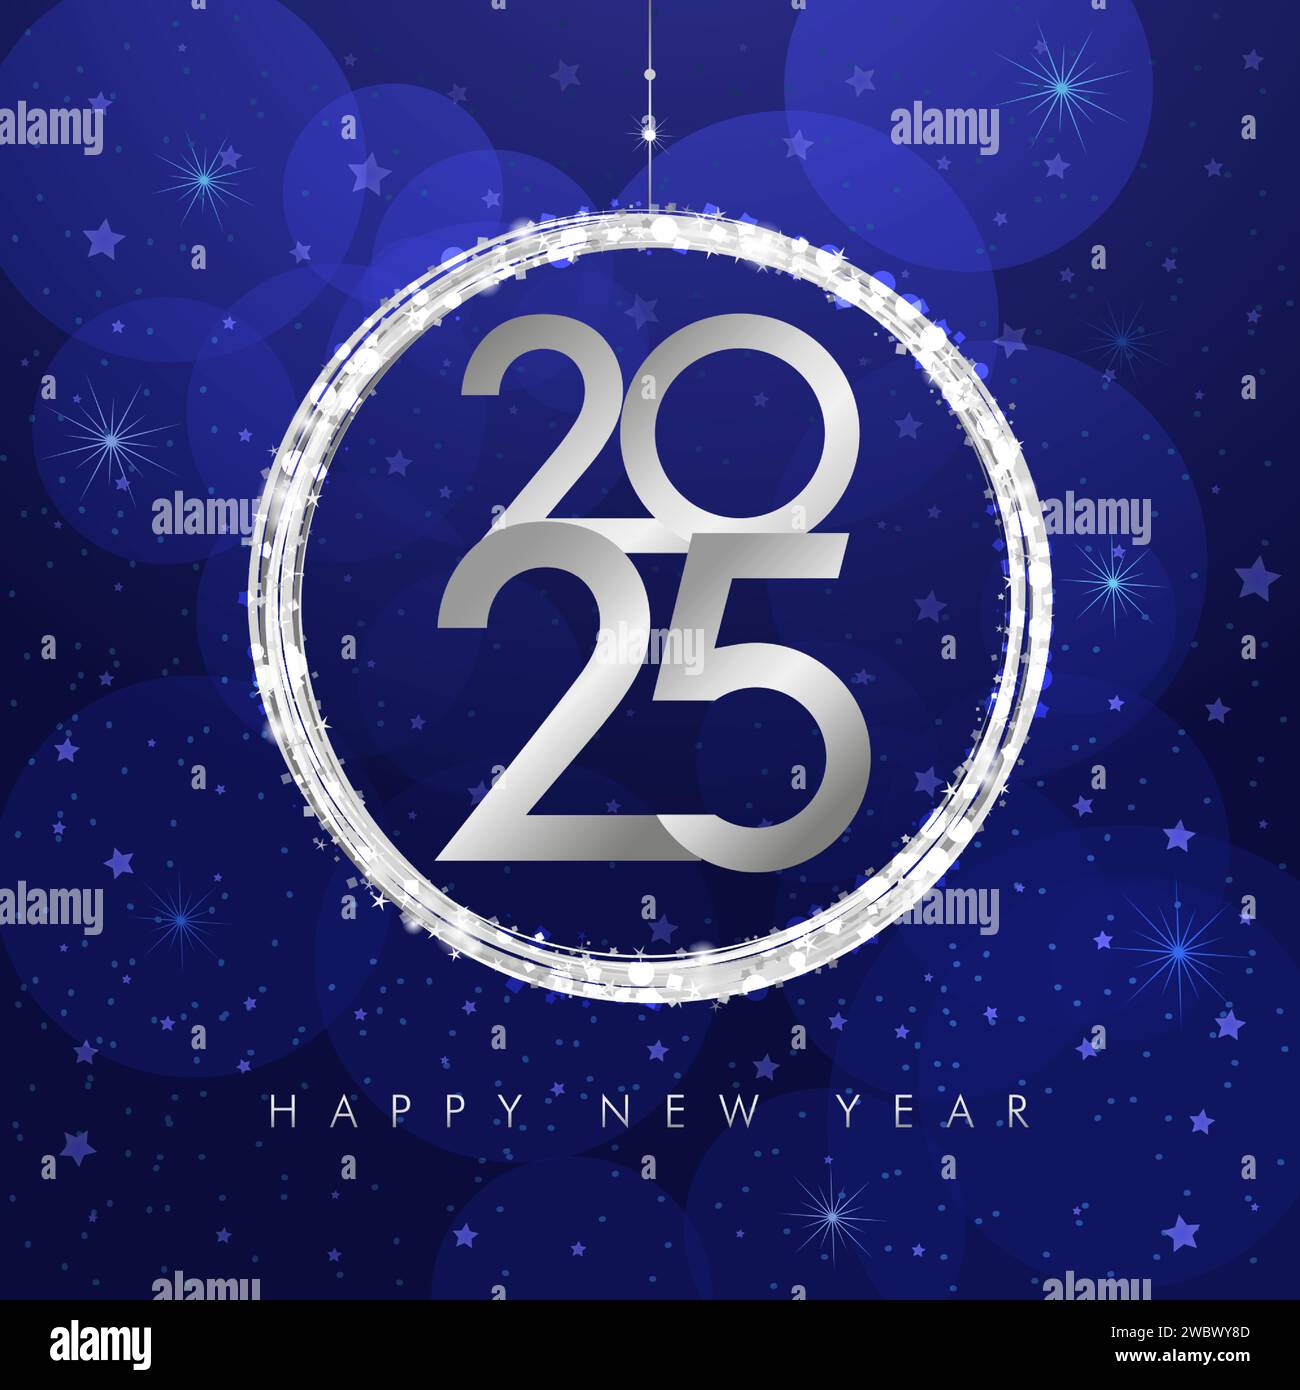 Quadratische Grußkarte mit dekorativem Ball und glänzenden Glitzern für das neue Jahr 2025. Kreative Typografie und Weihnachtsball. Feierabend blauer Hintergrund. Stock Vektor